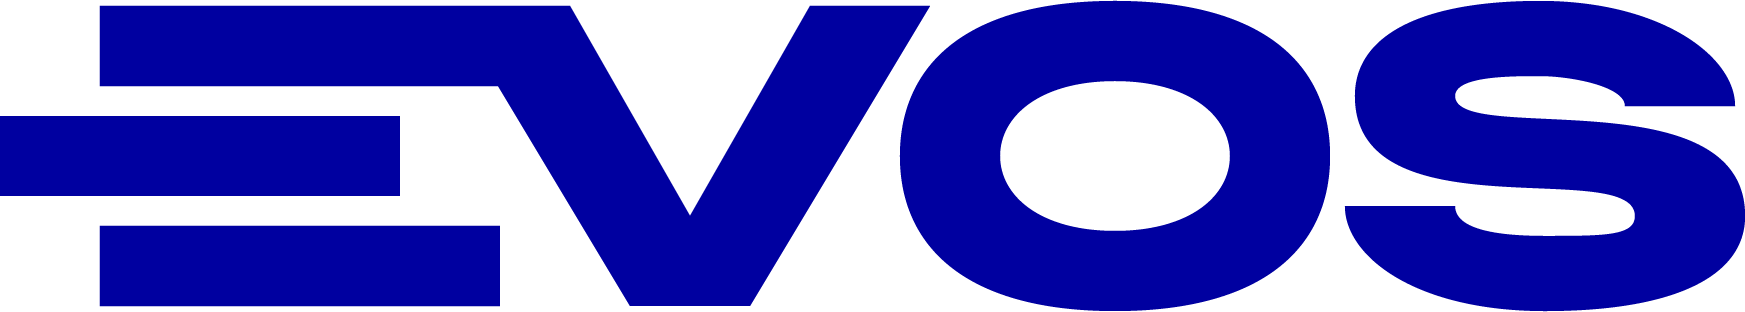 Evos_logo